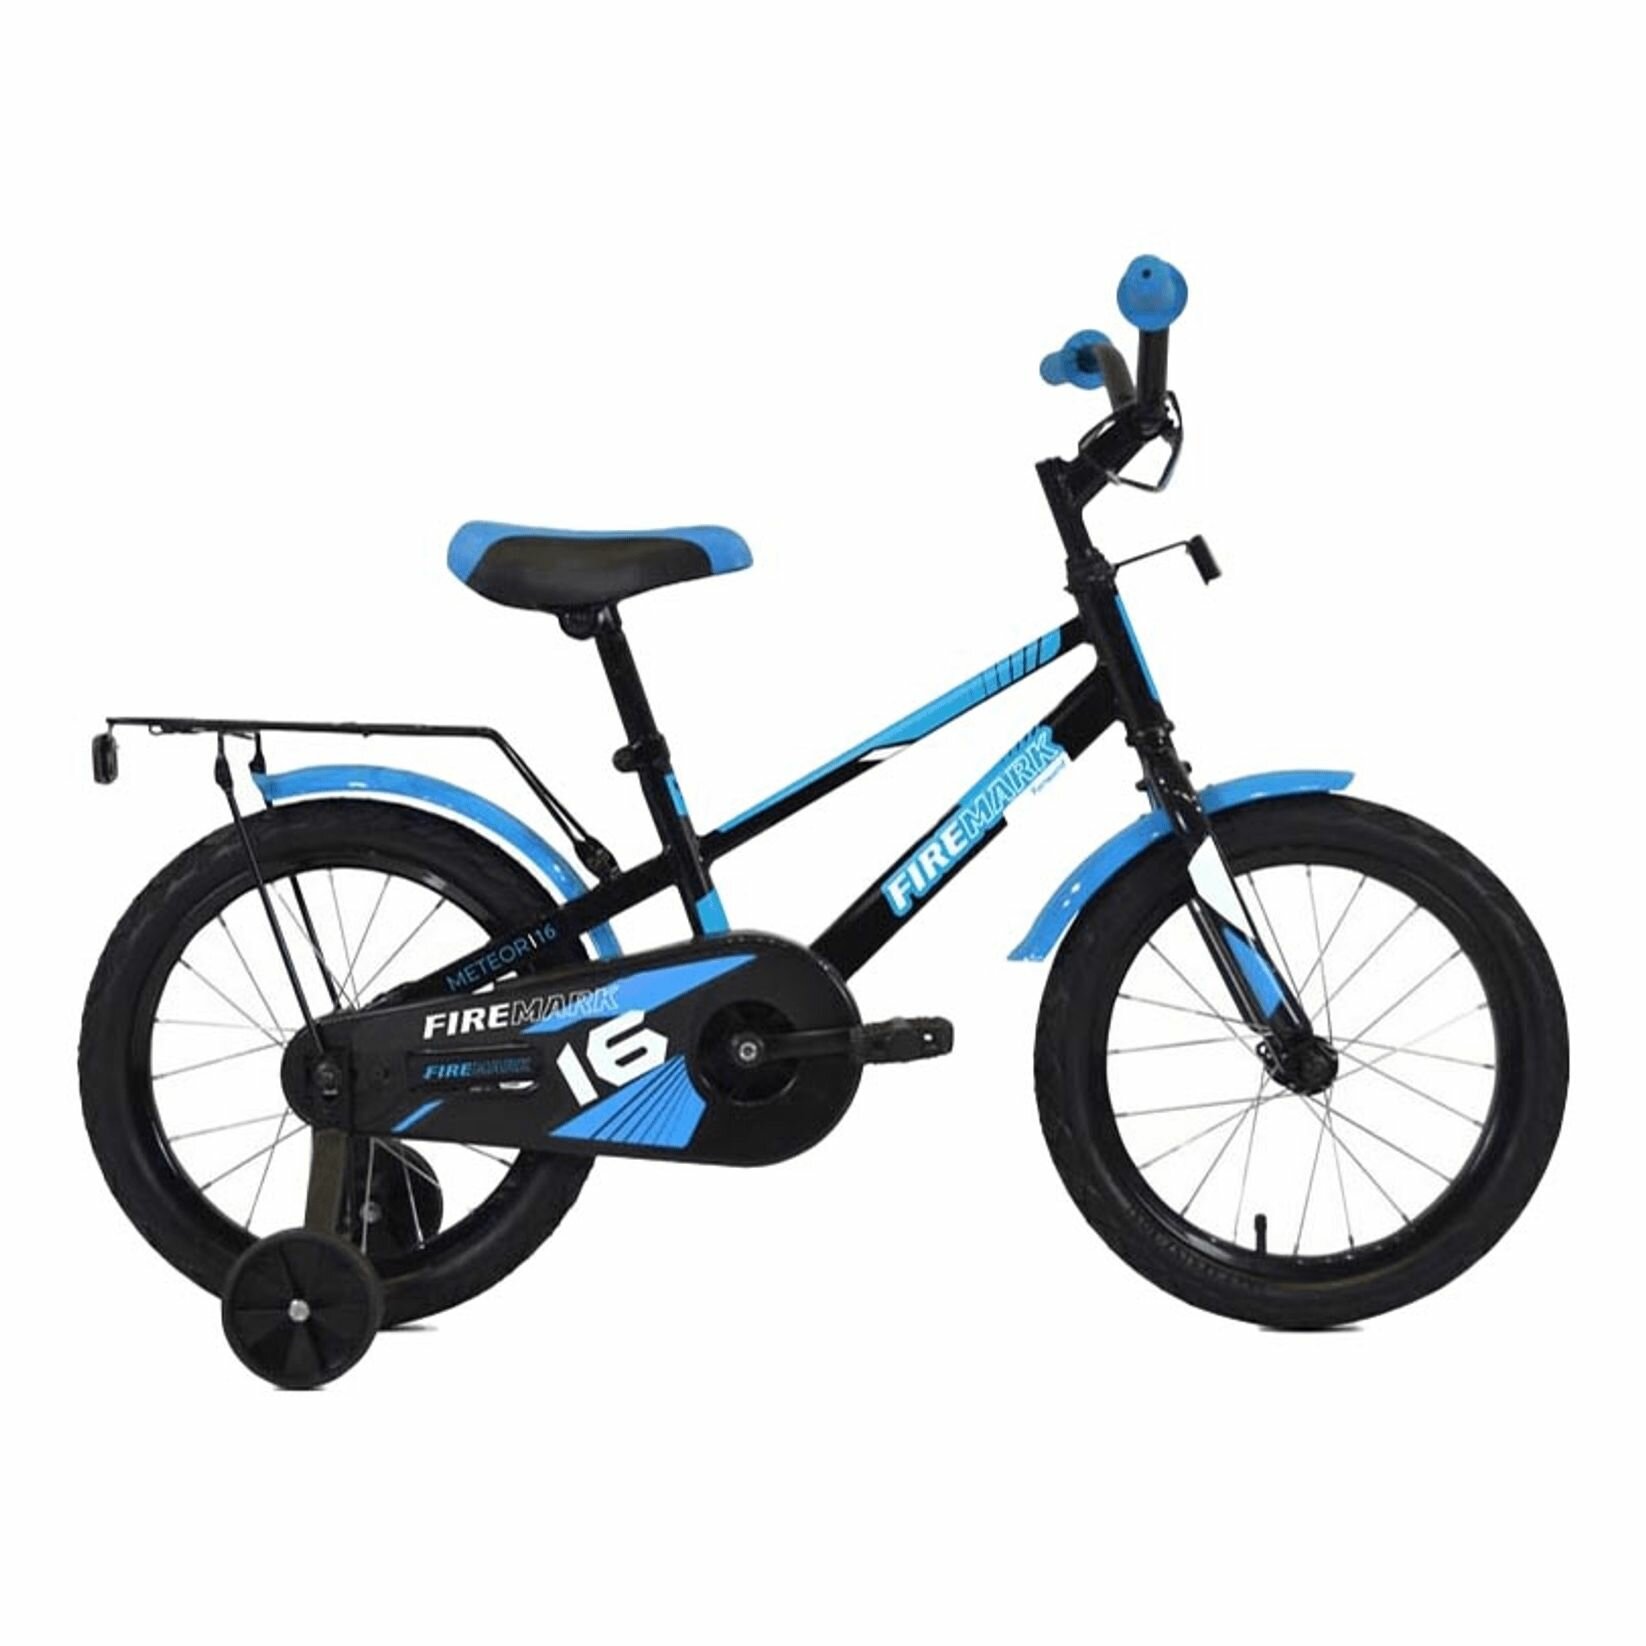 SKIF 16 (16" 1 ск.) 2022, черный/голубой, IBK22OK16005 Велосипед